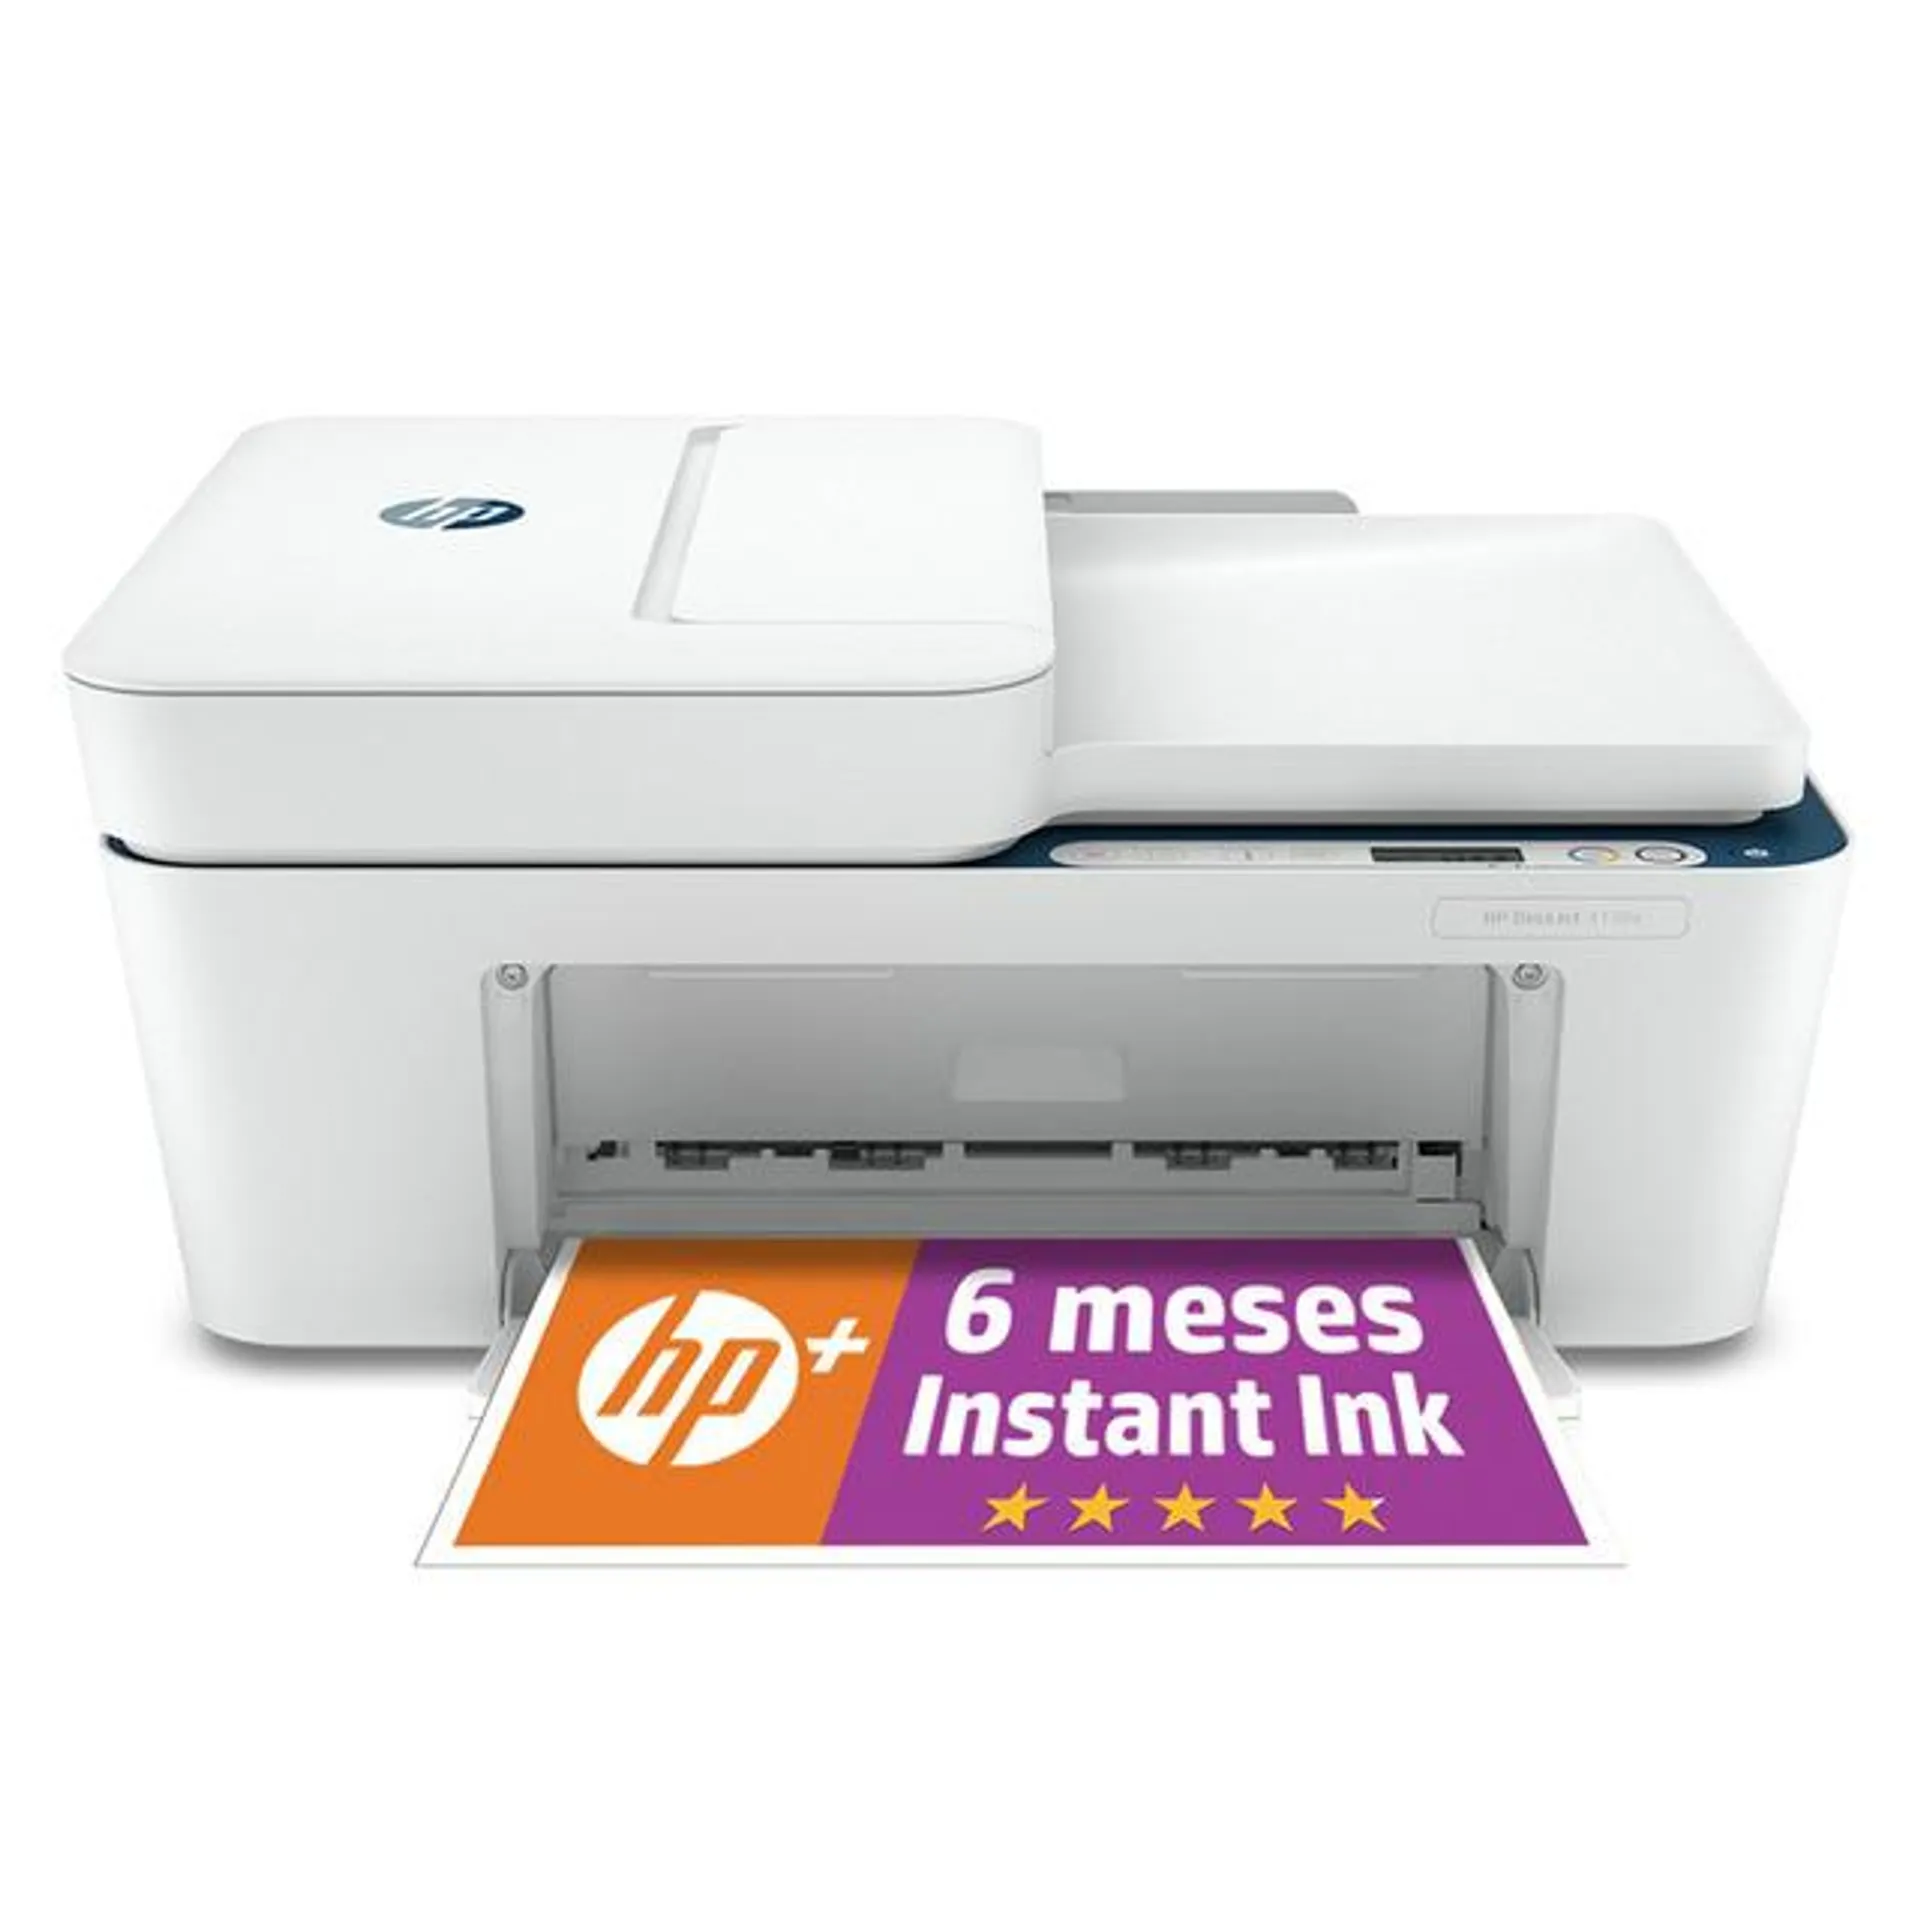 Impresora Multifunción HP DeskJet 4130e, WiFi, USB, color, 6 meses de impresión Instant Ink con HP+, HP Smart App